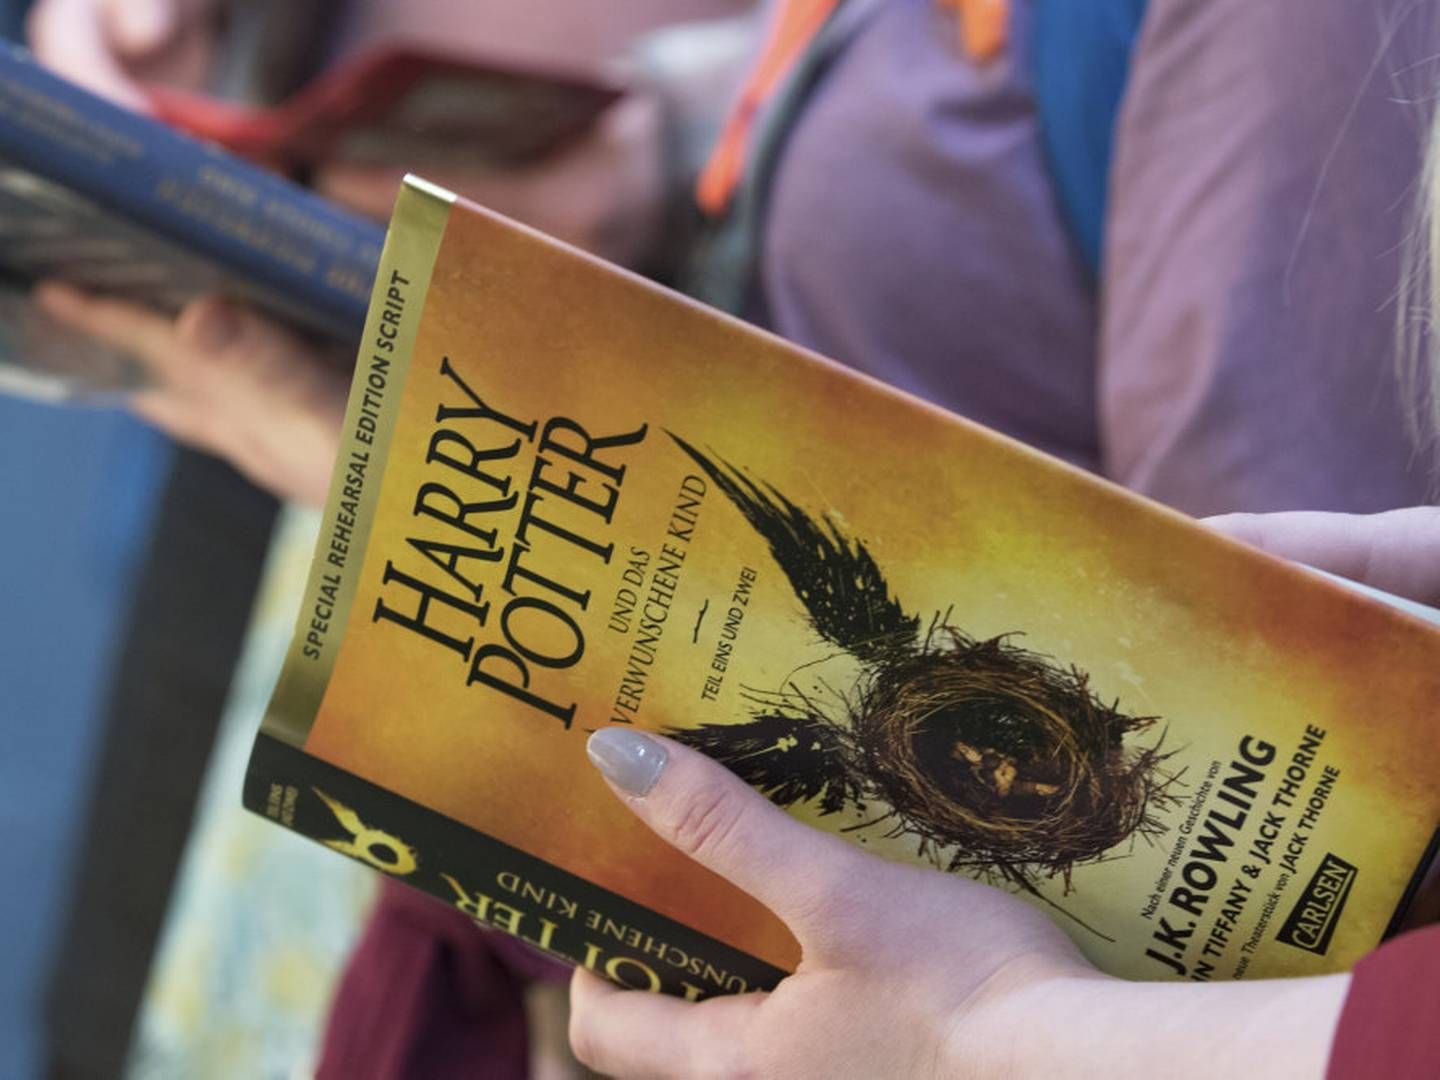 Den populære bogserie udkom i februar sidste år som spil. Spillet, der hedder "Hogwarts Legacy" solgte 12 millioner eksemplarer på to uger. | Foto: Hendrik Schmidt/Ritzau Scanpix